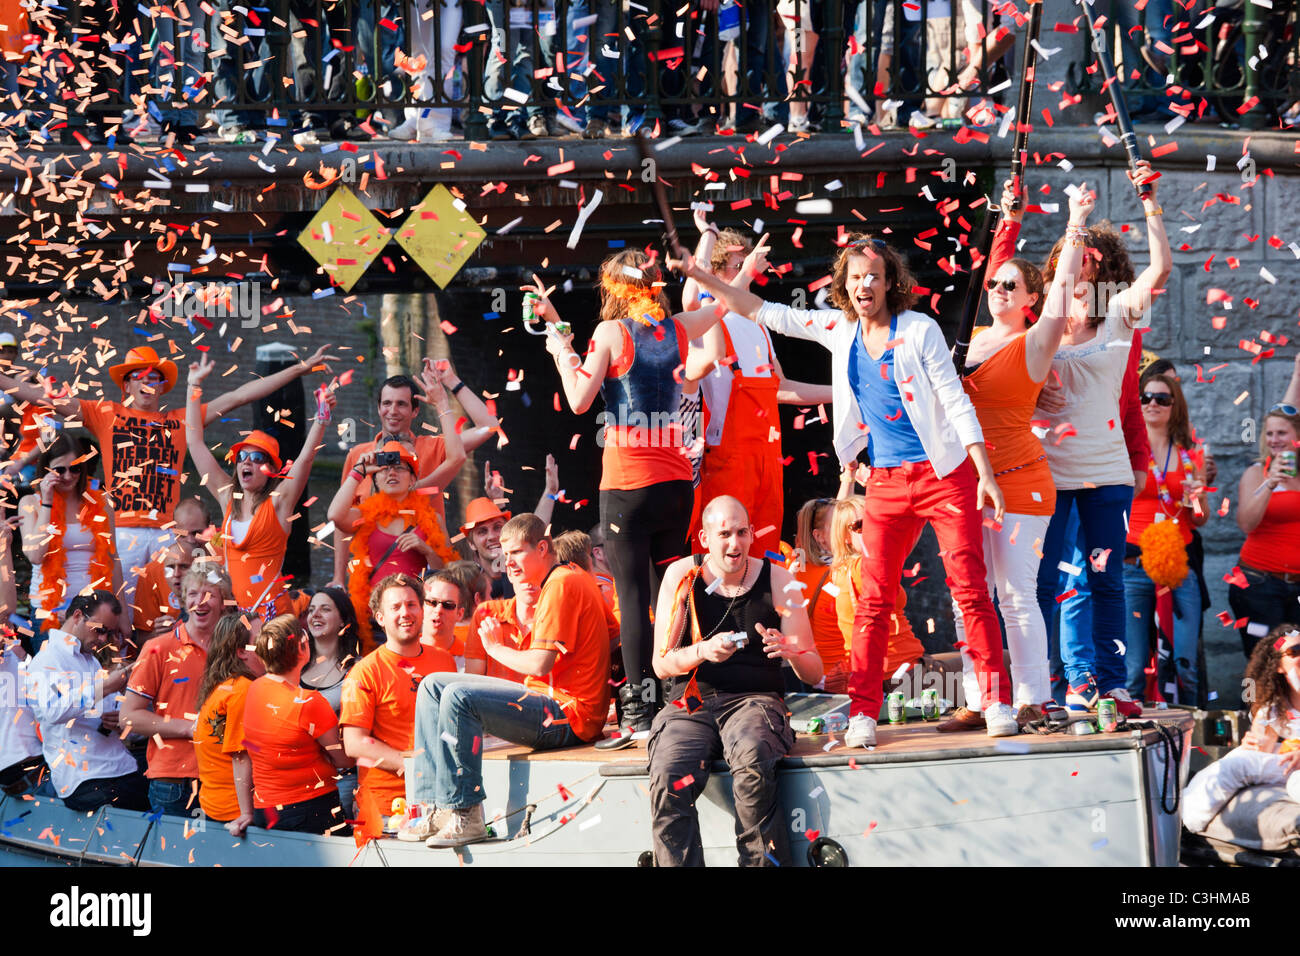 Königstag, der Geburtstag des Königs, ehemals Königinnentag. Amsterdam Canal Parade Boote Menschen feiern schießen orangefarbene Konfetti. Stockfoto